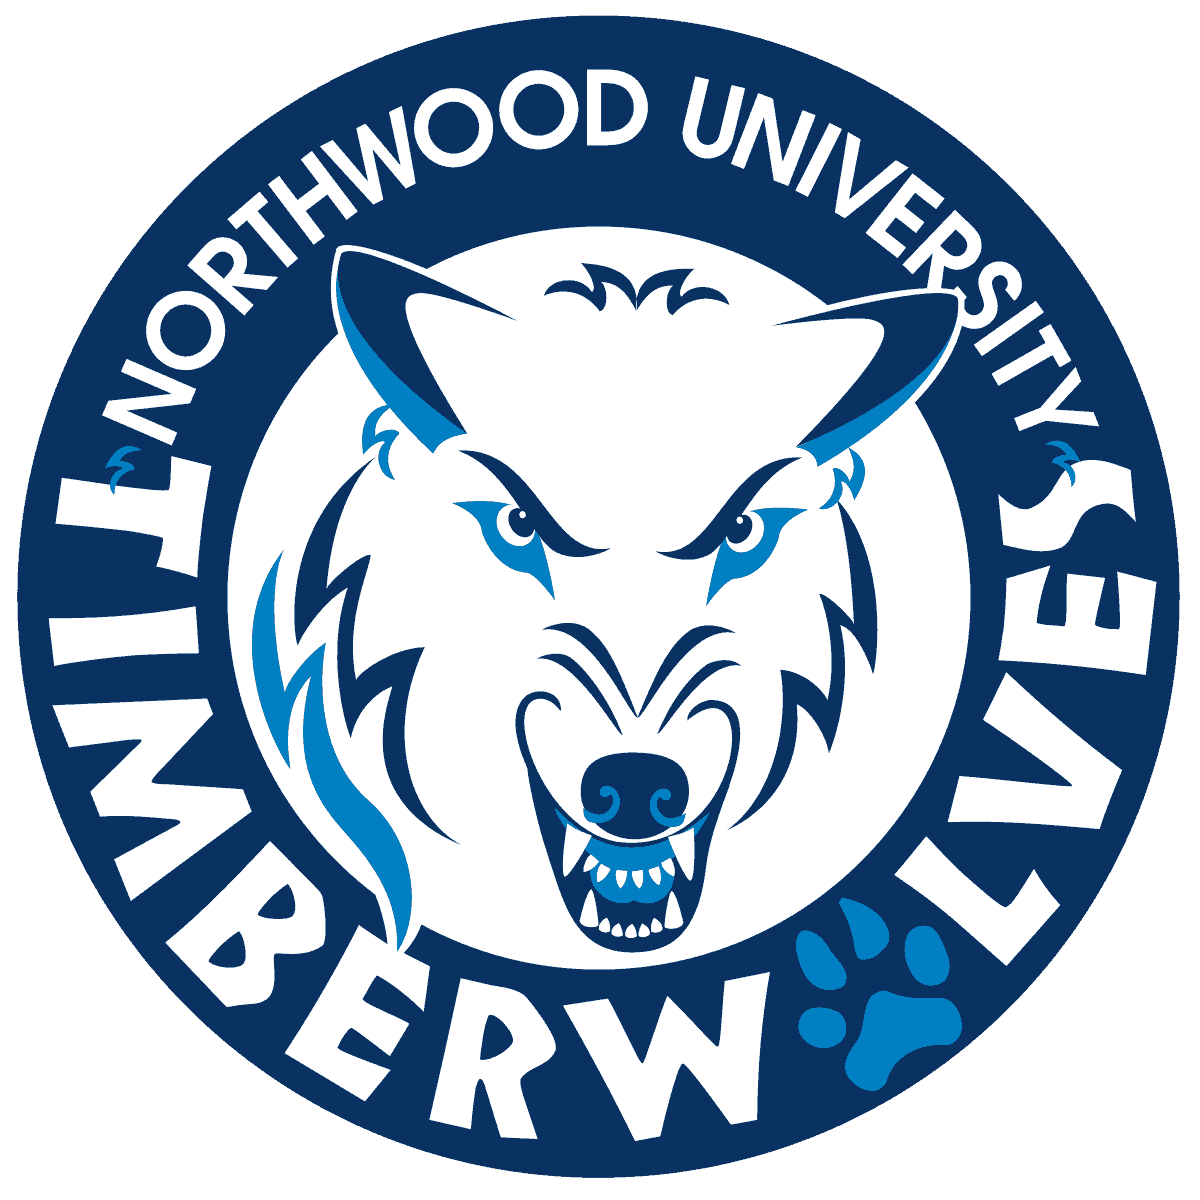 Discover Midland - Northwood University